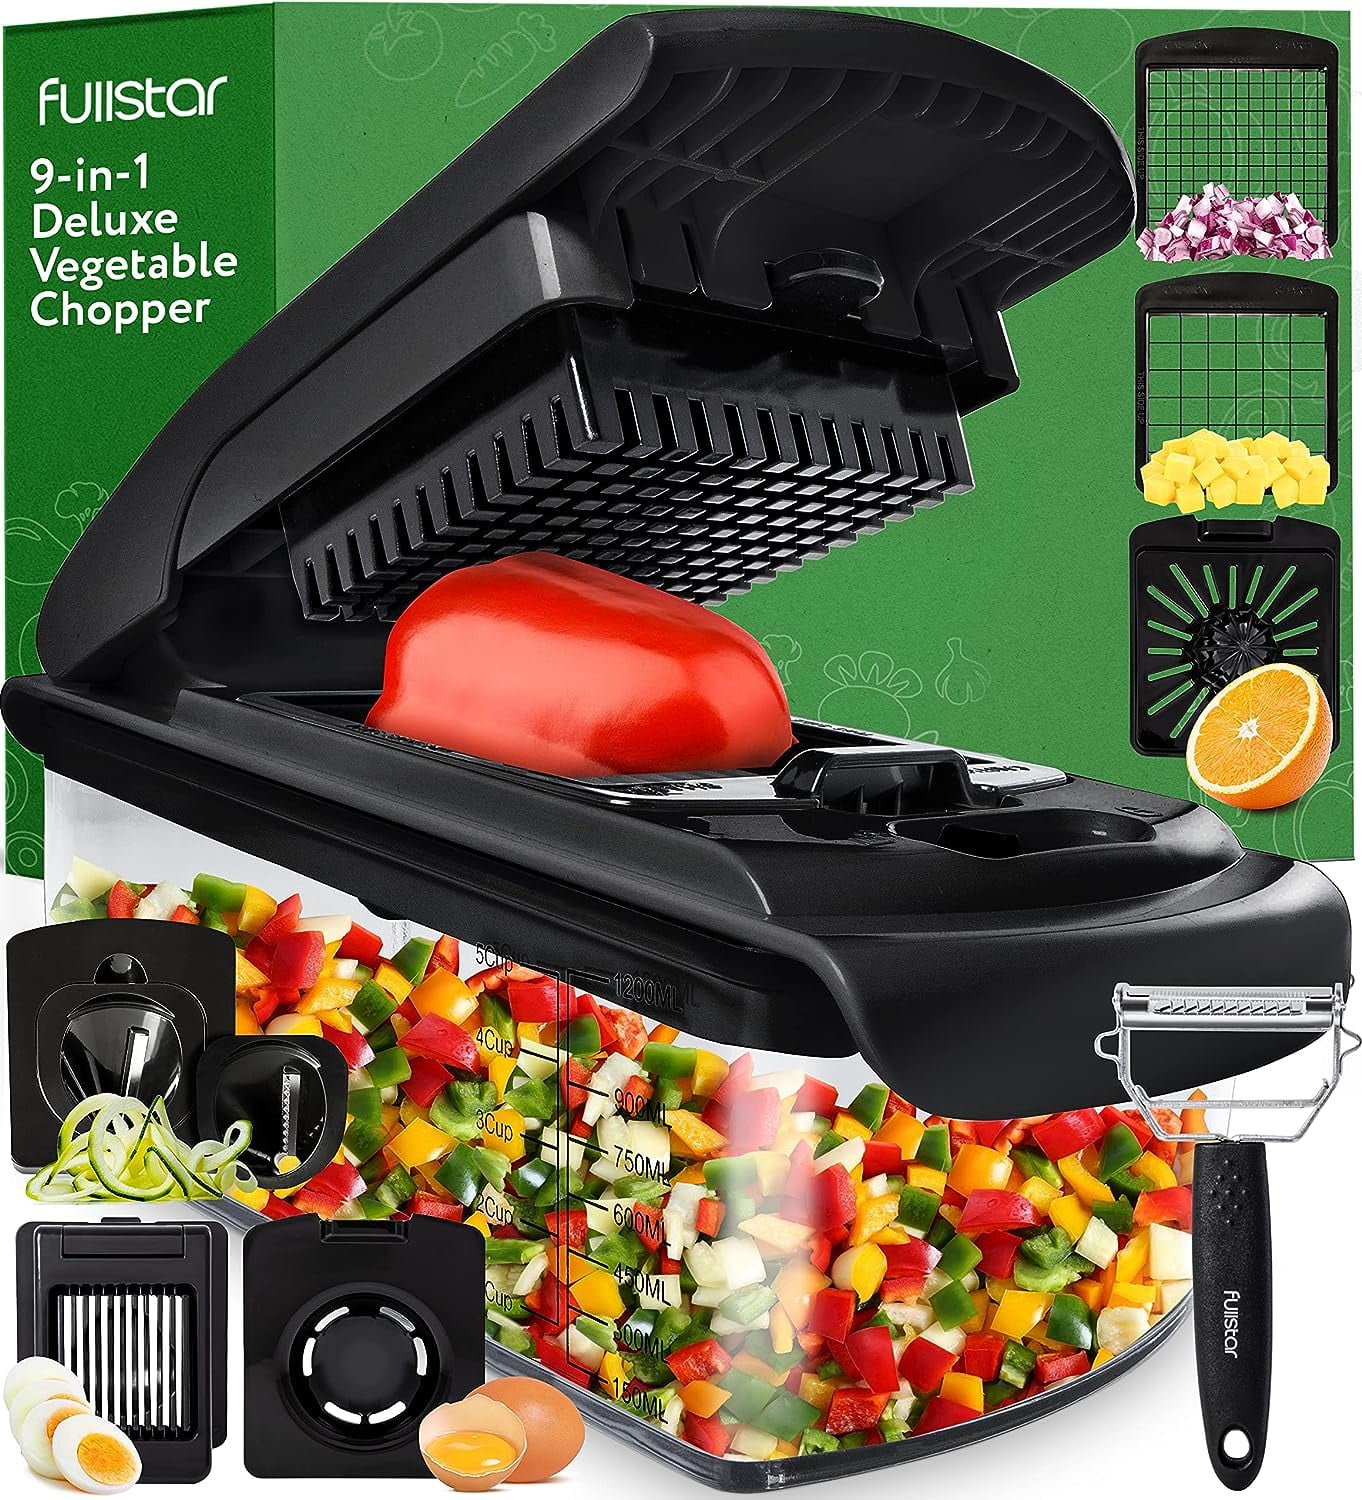 Fullstar Vegetable Chopper 9 - 1 Complete Review New Methods Kitchen G